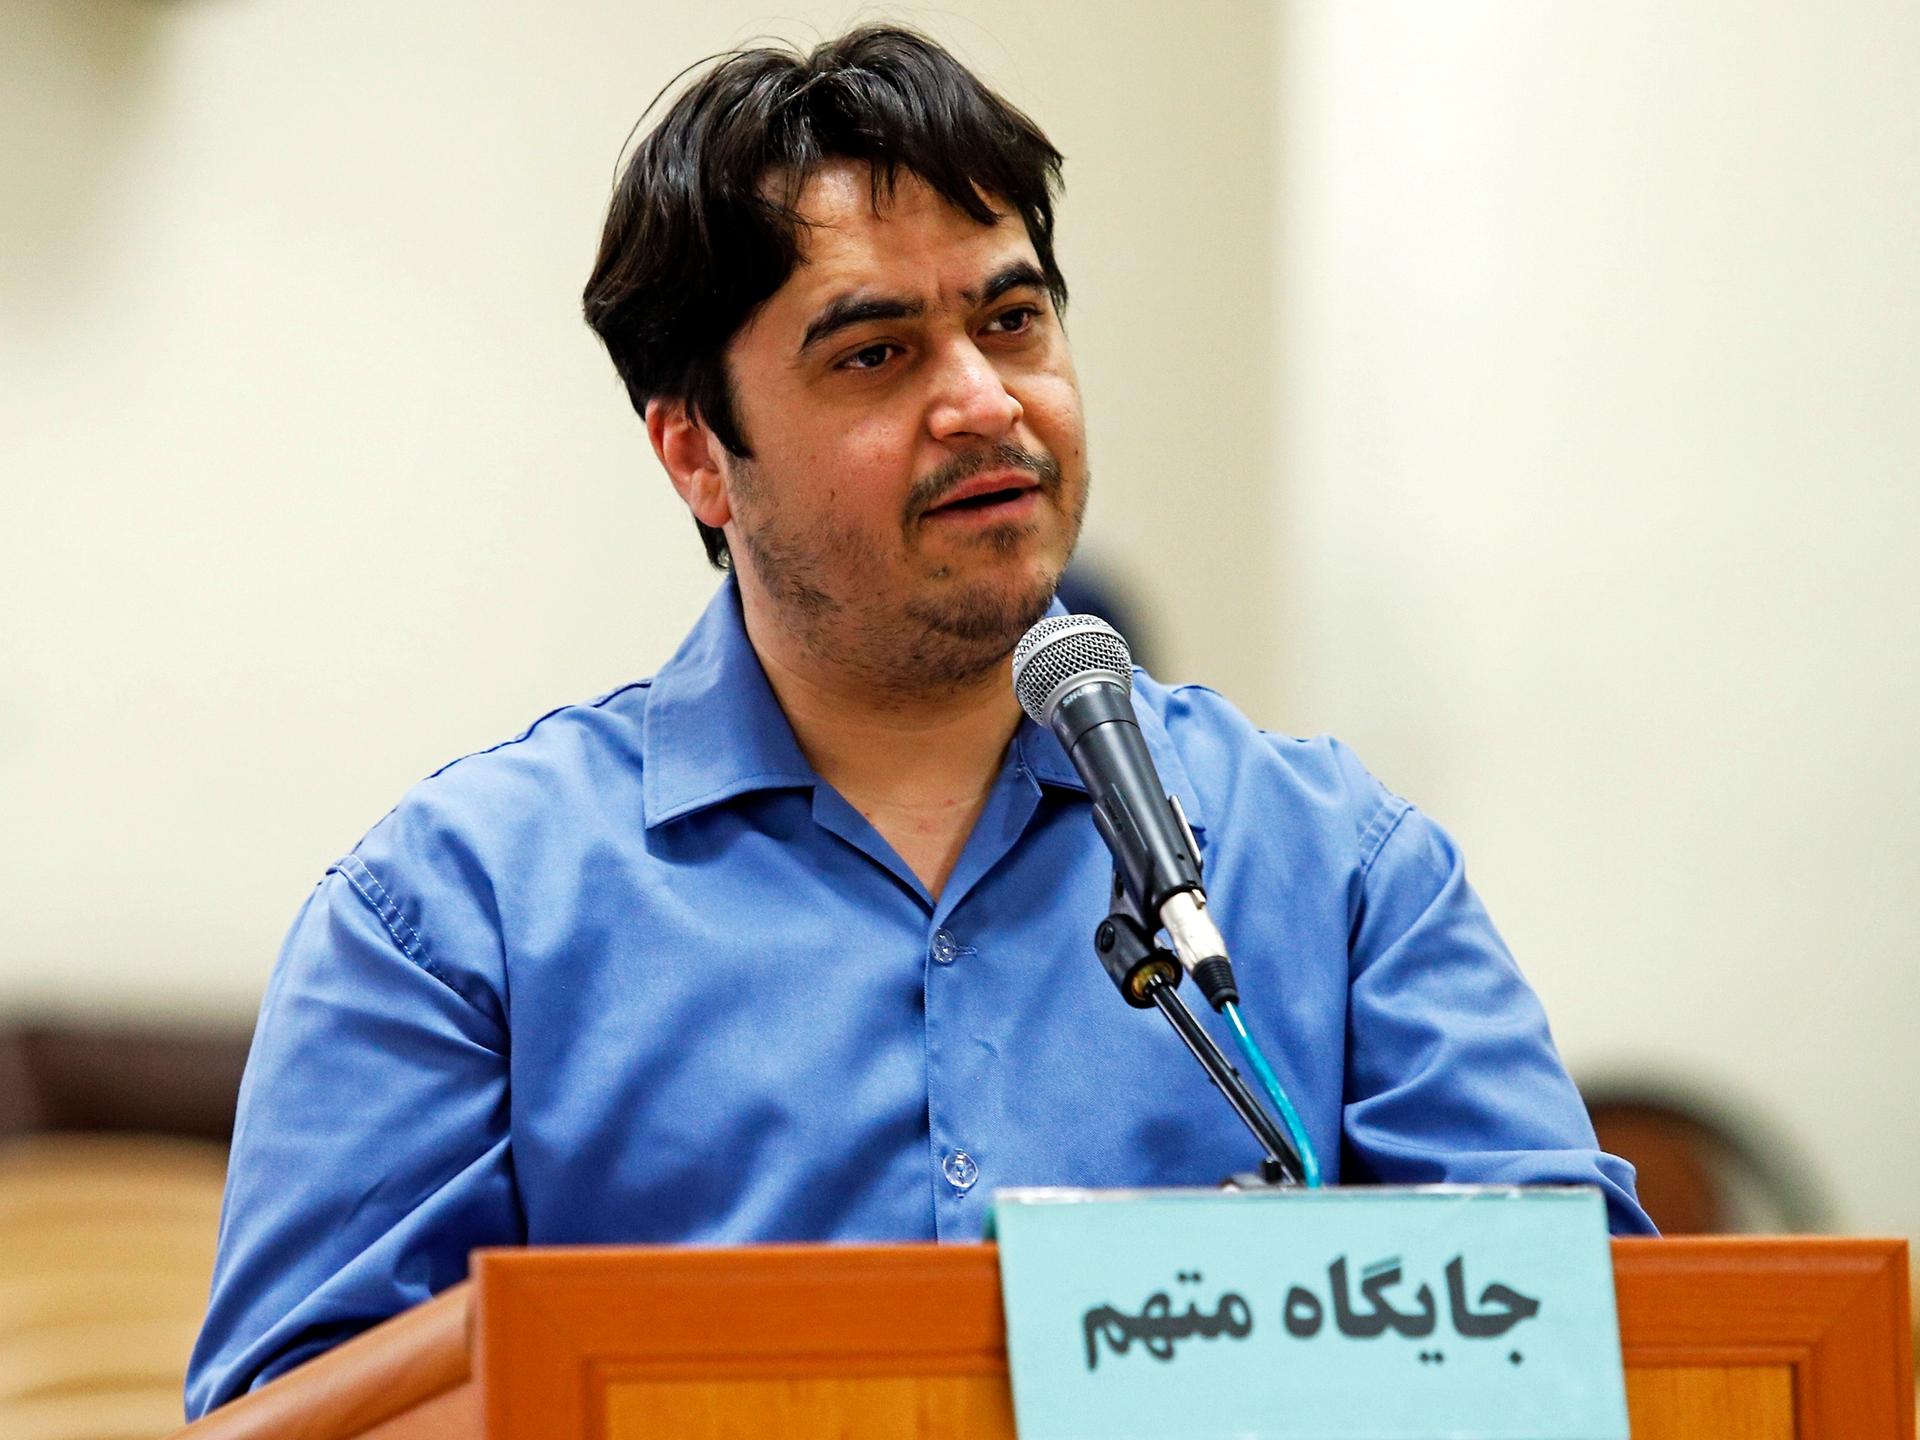 Der Journalist Ruhollah Zam steht in einem blauen Hemd hinter einem Holzpult.